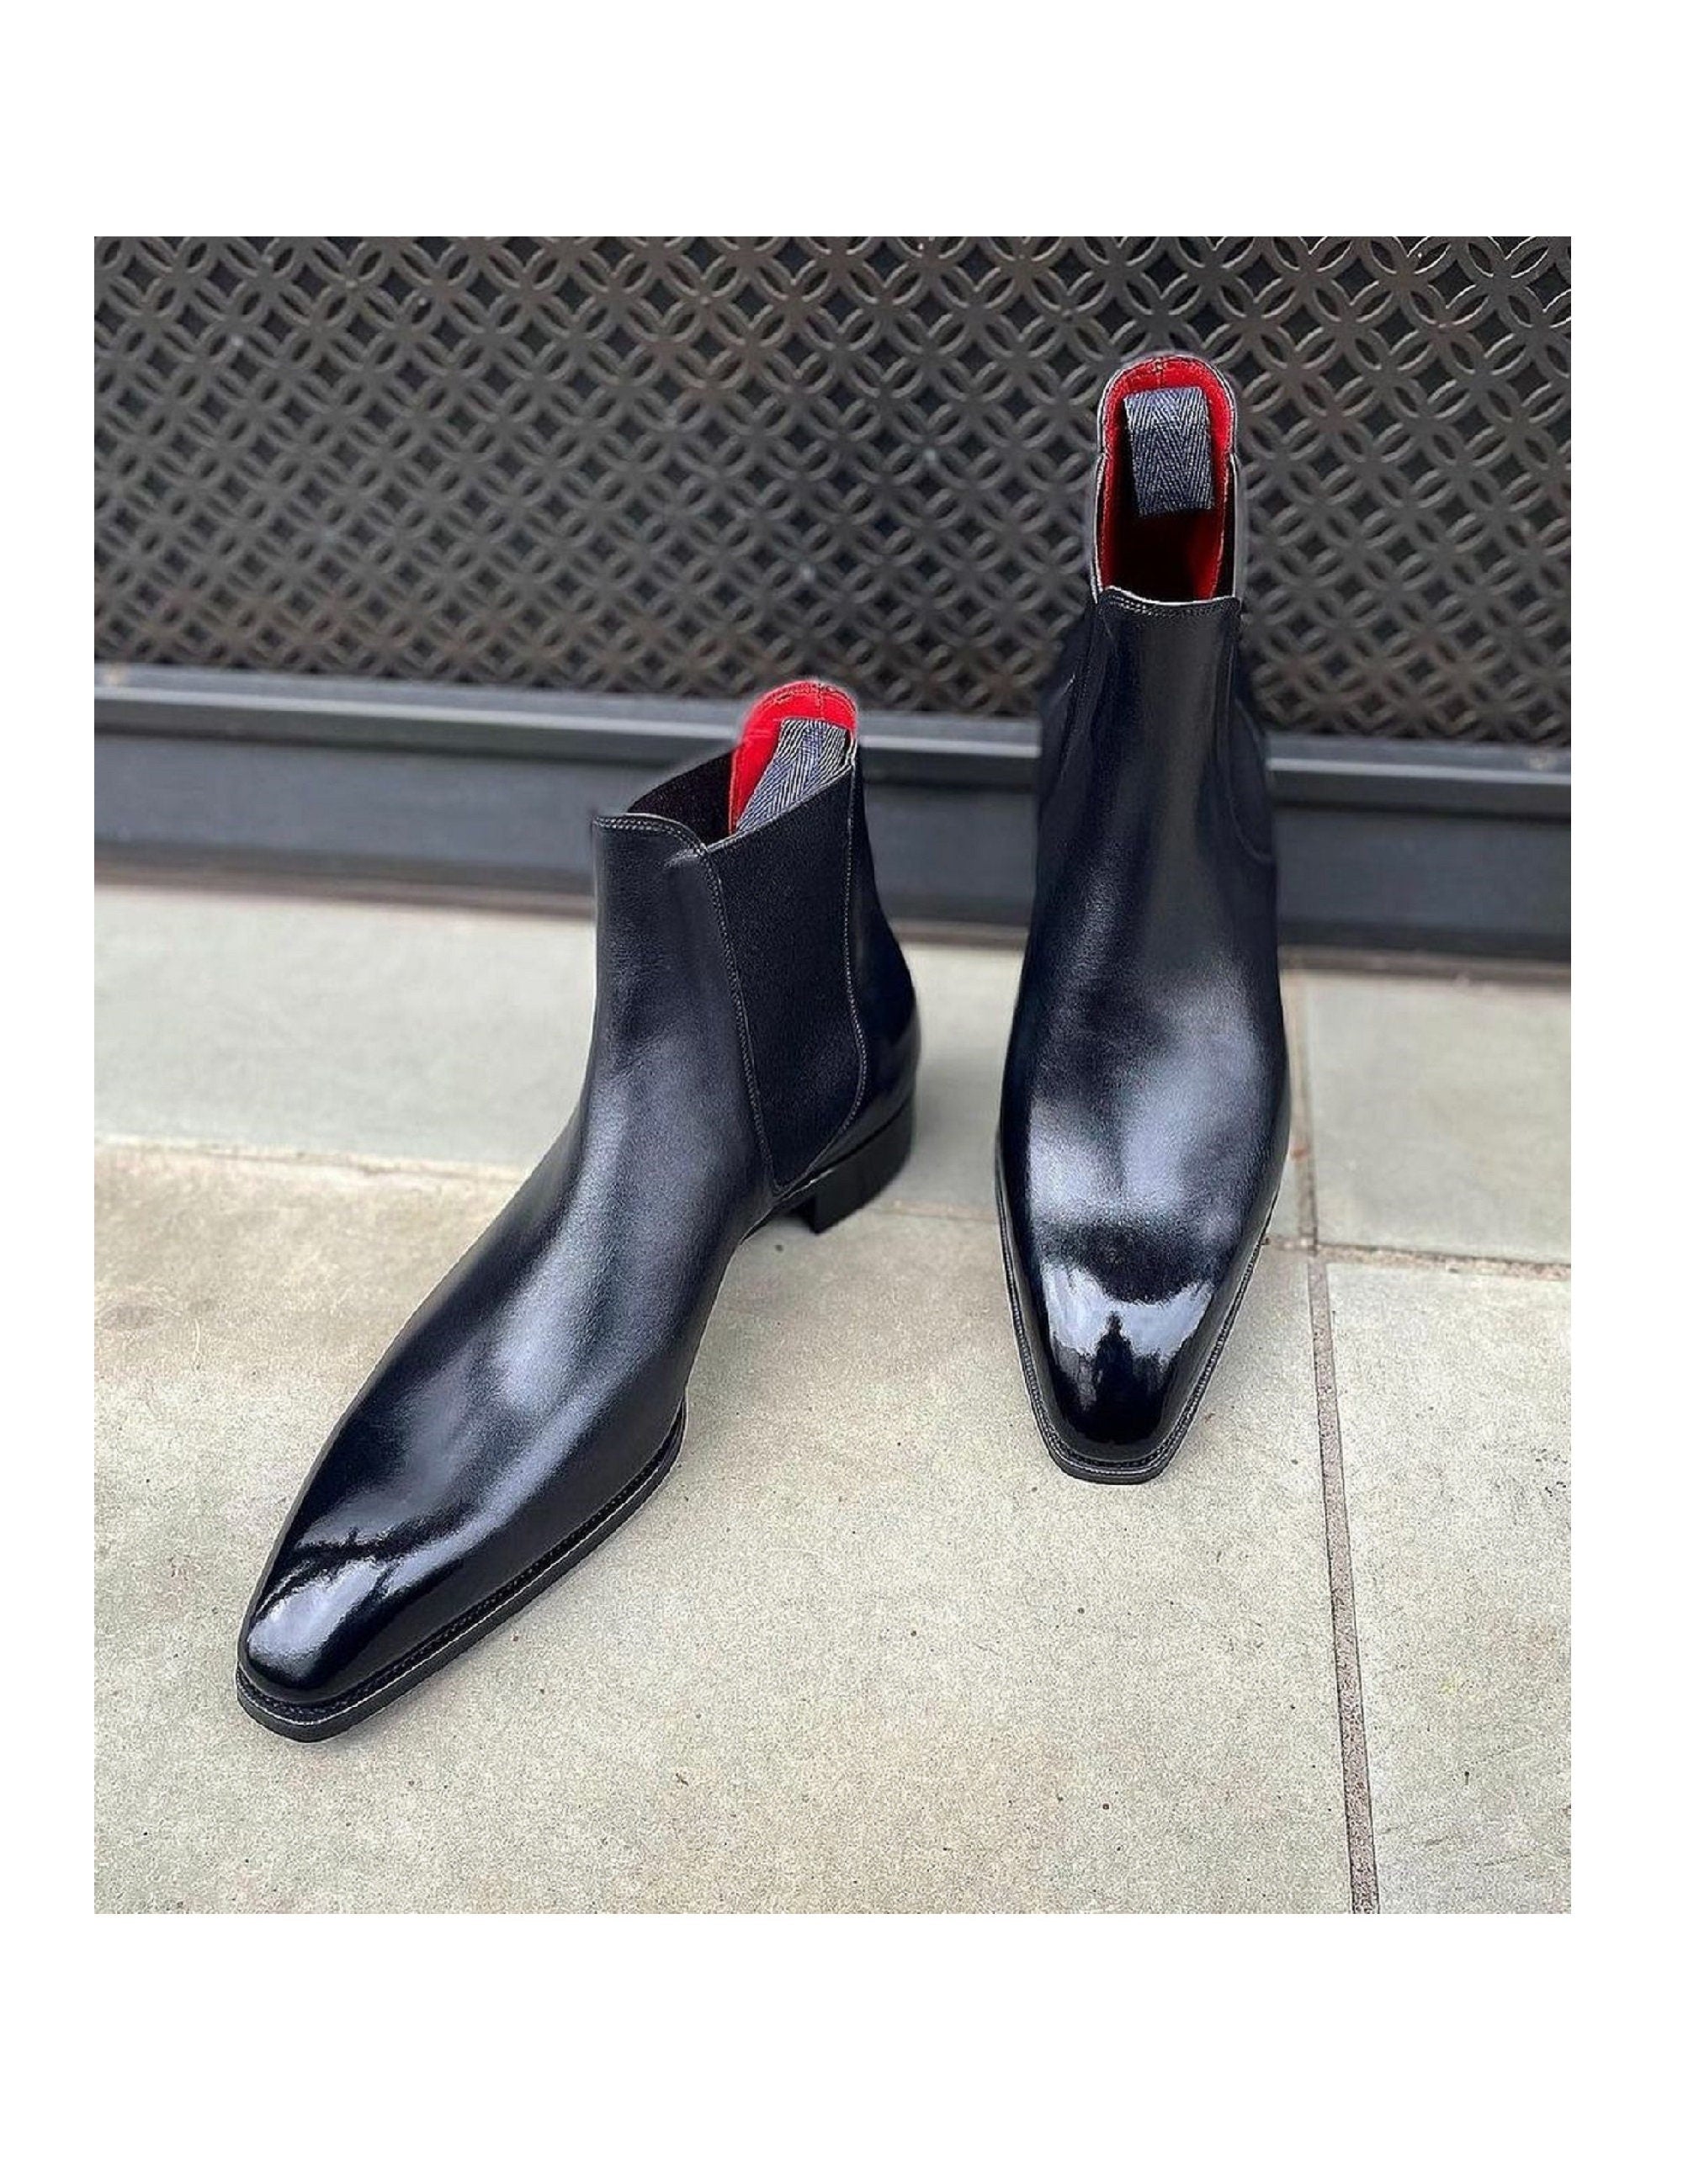 Handmade Mens Black Calf Leather Chelsea Boot, Men elegant leather boot